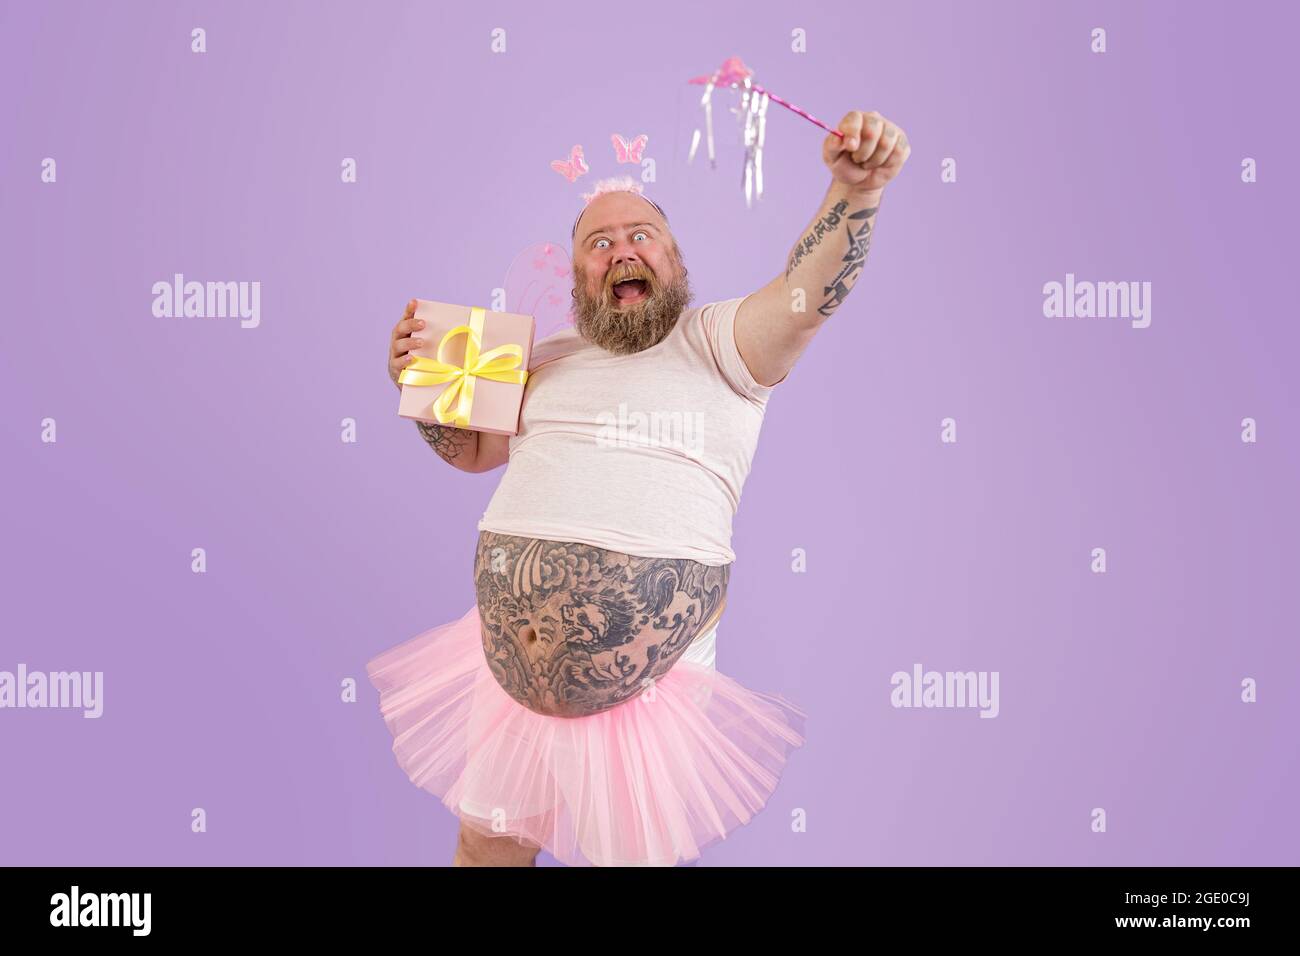 Aufgeregt Mann mit Übergewicht in Fee Kostüm hält Zauberstab und  präsentieren auf lila Hintergrund Stockfotografie - Alamy